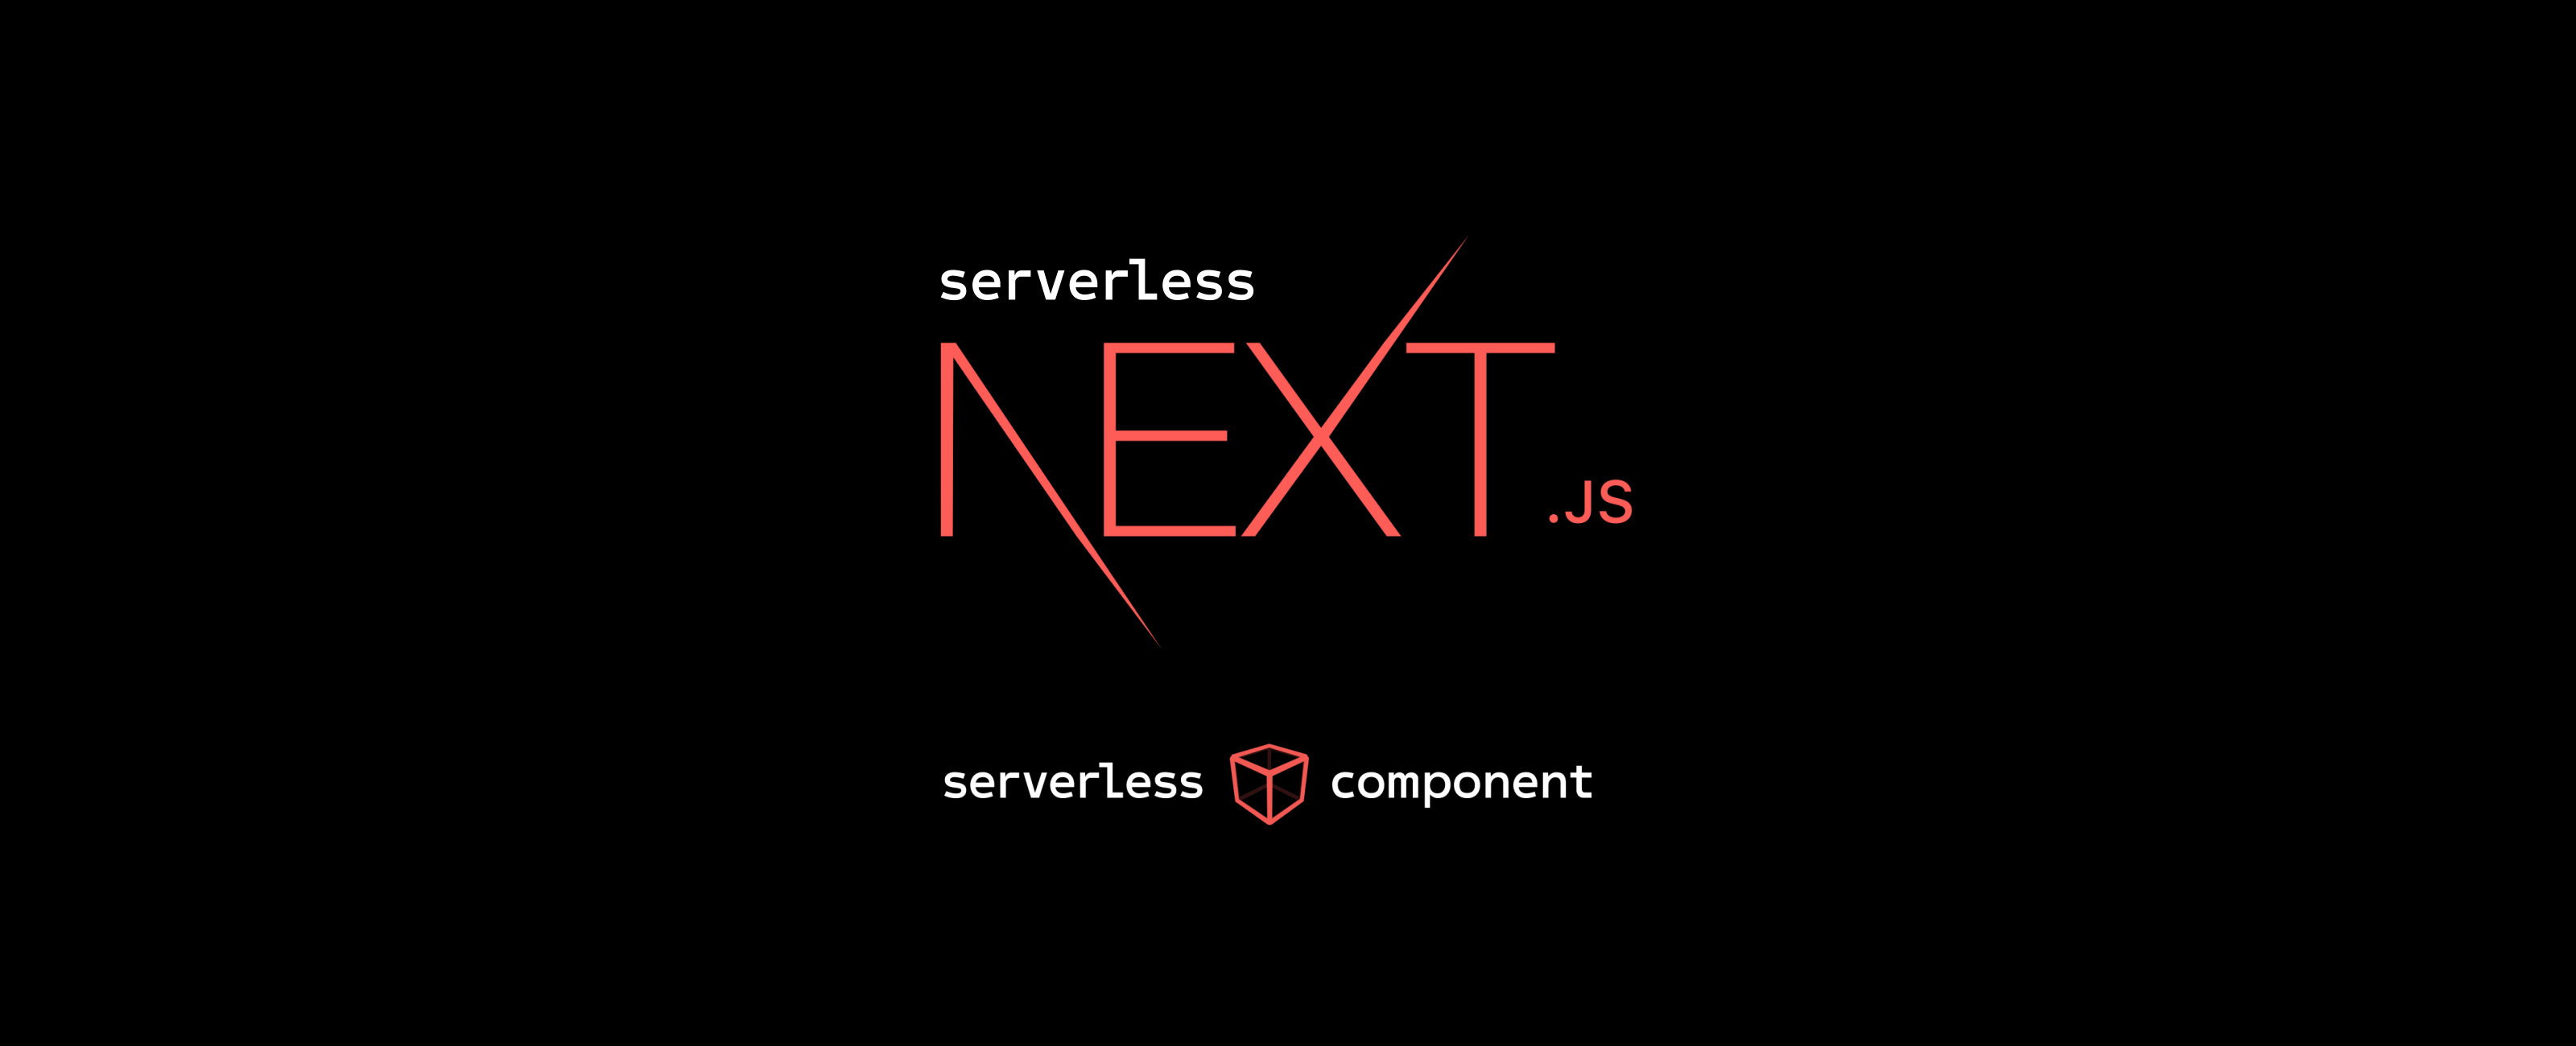 The Serverless Framework with Next.js